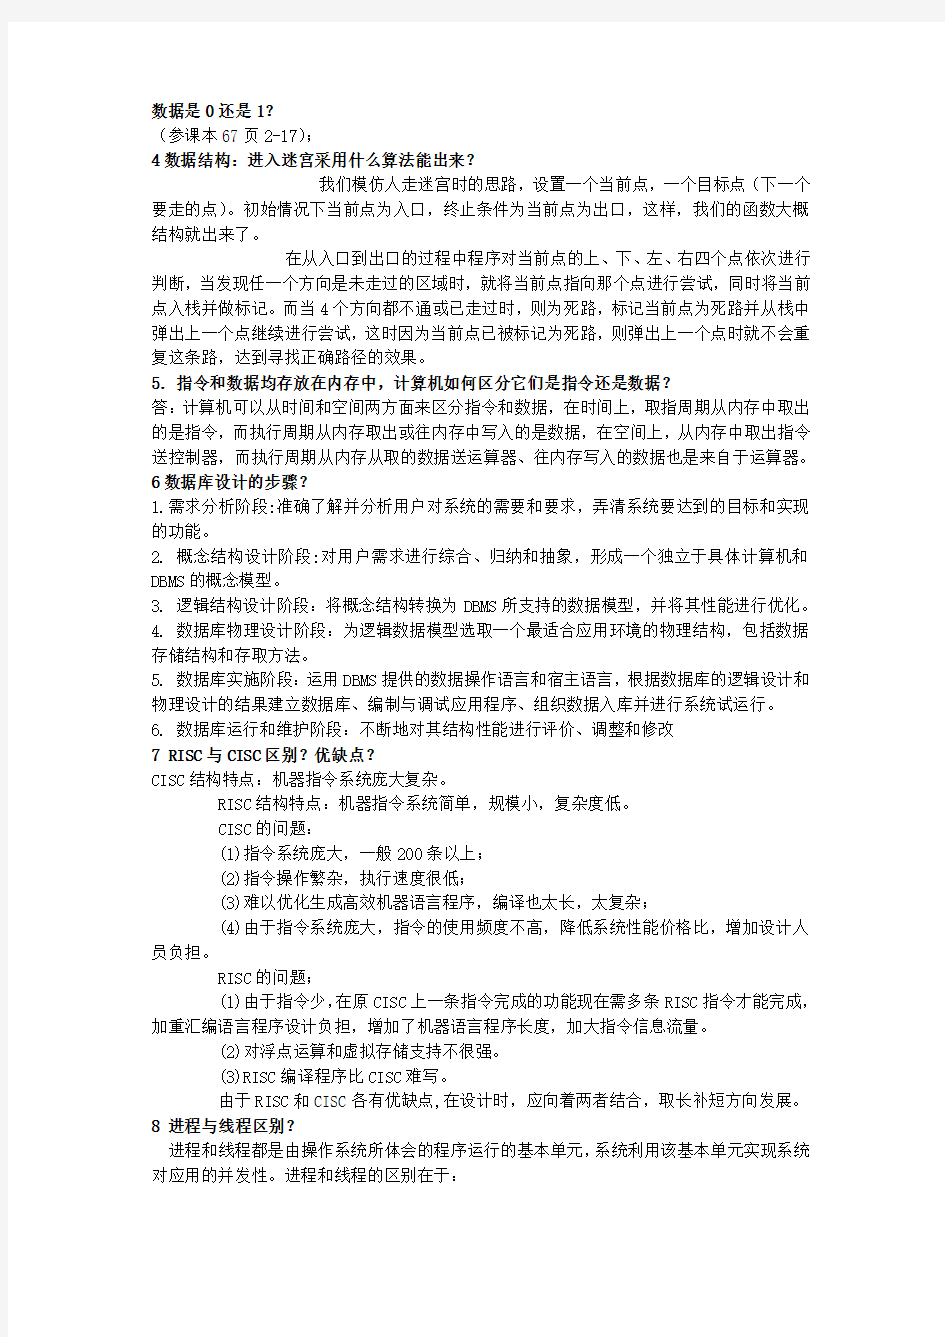 北京科技大学计算机专业硕士生面试题 - 计算机类研究生面试试题